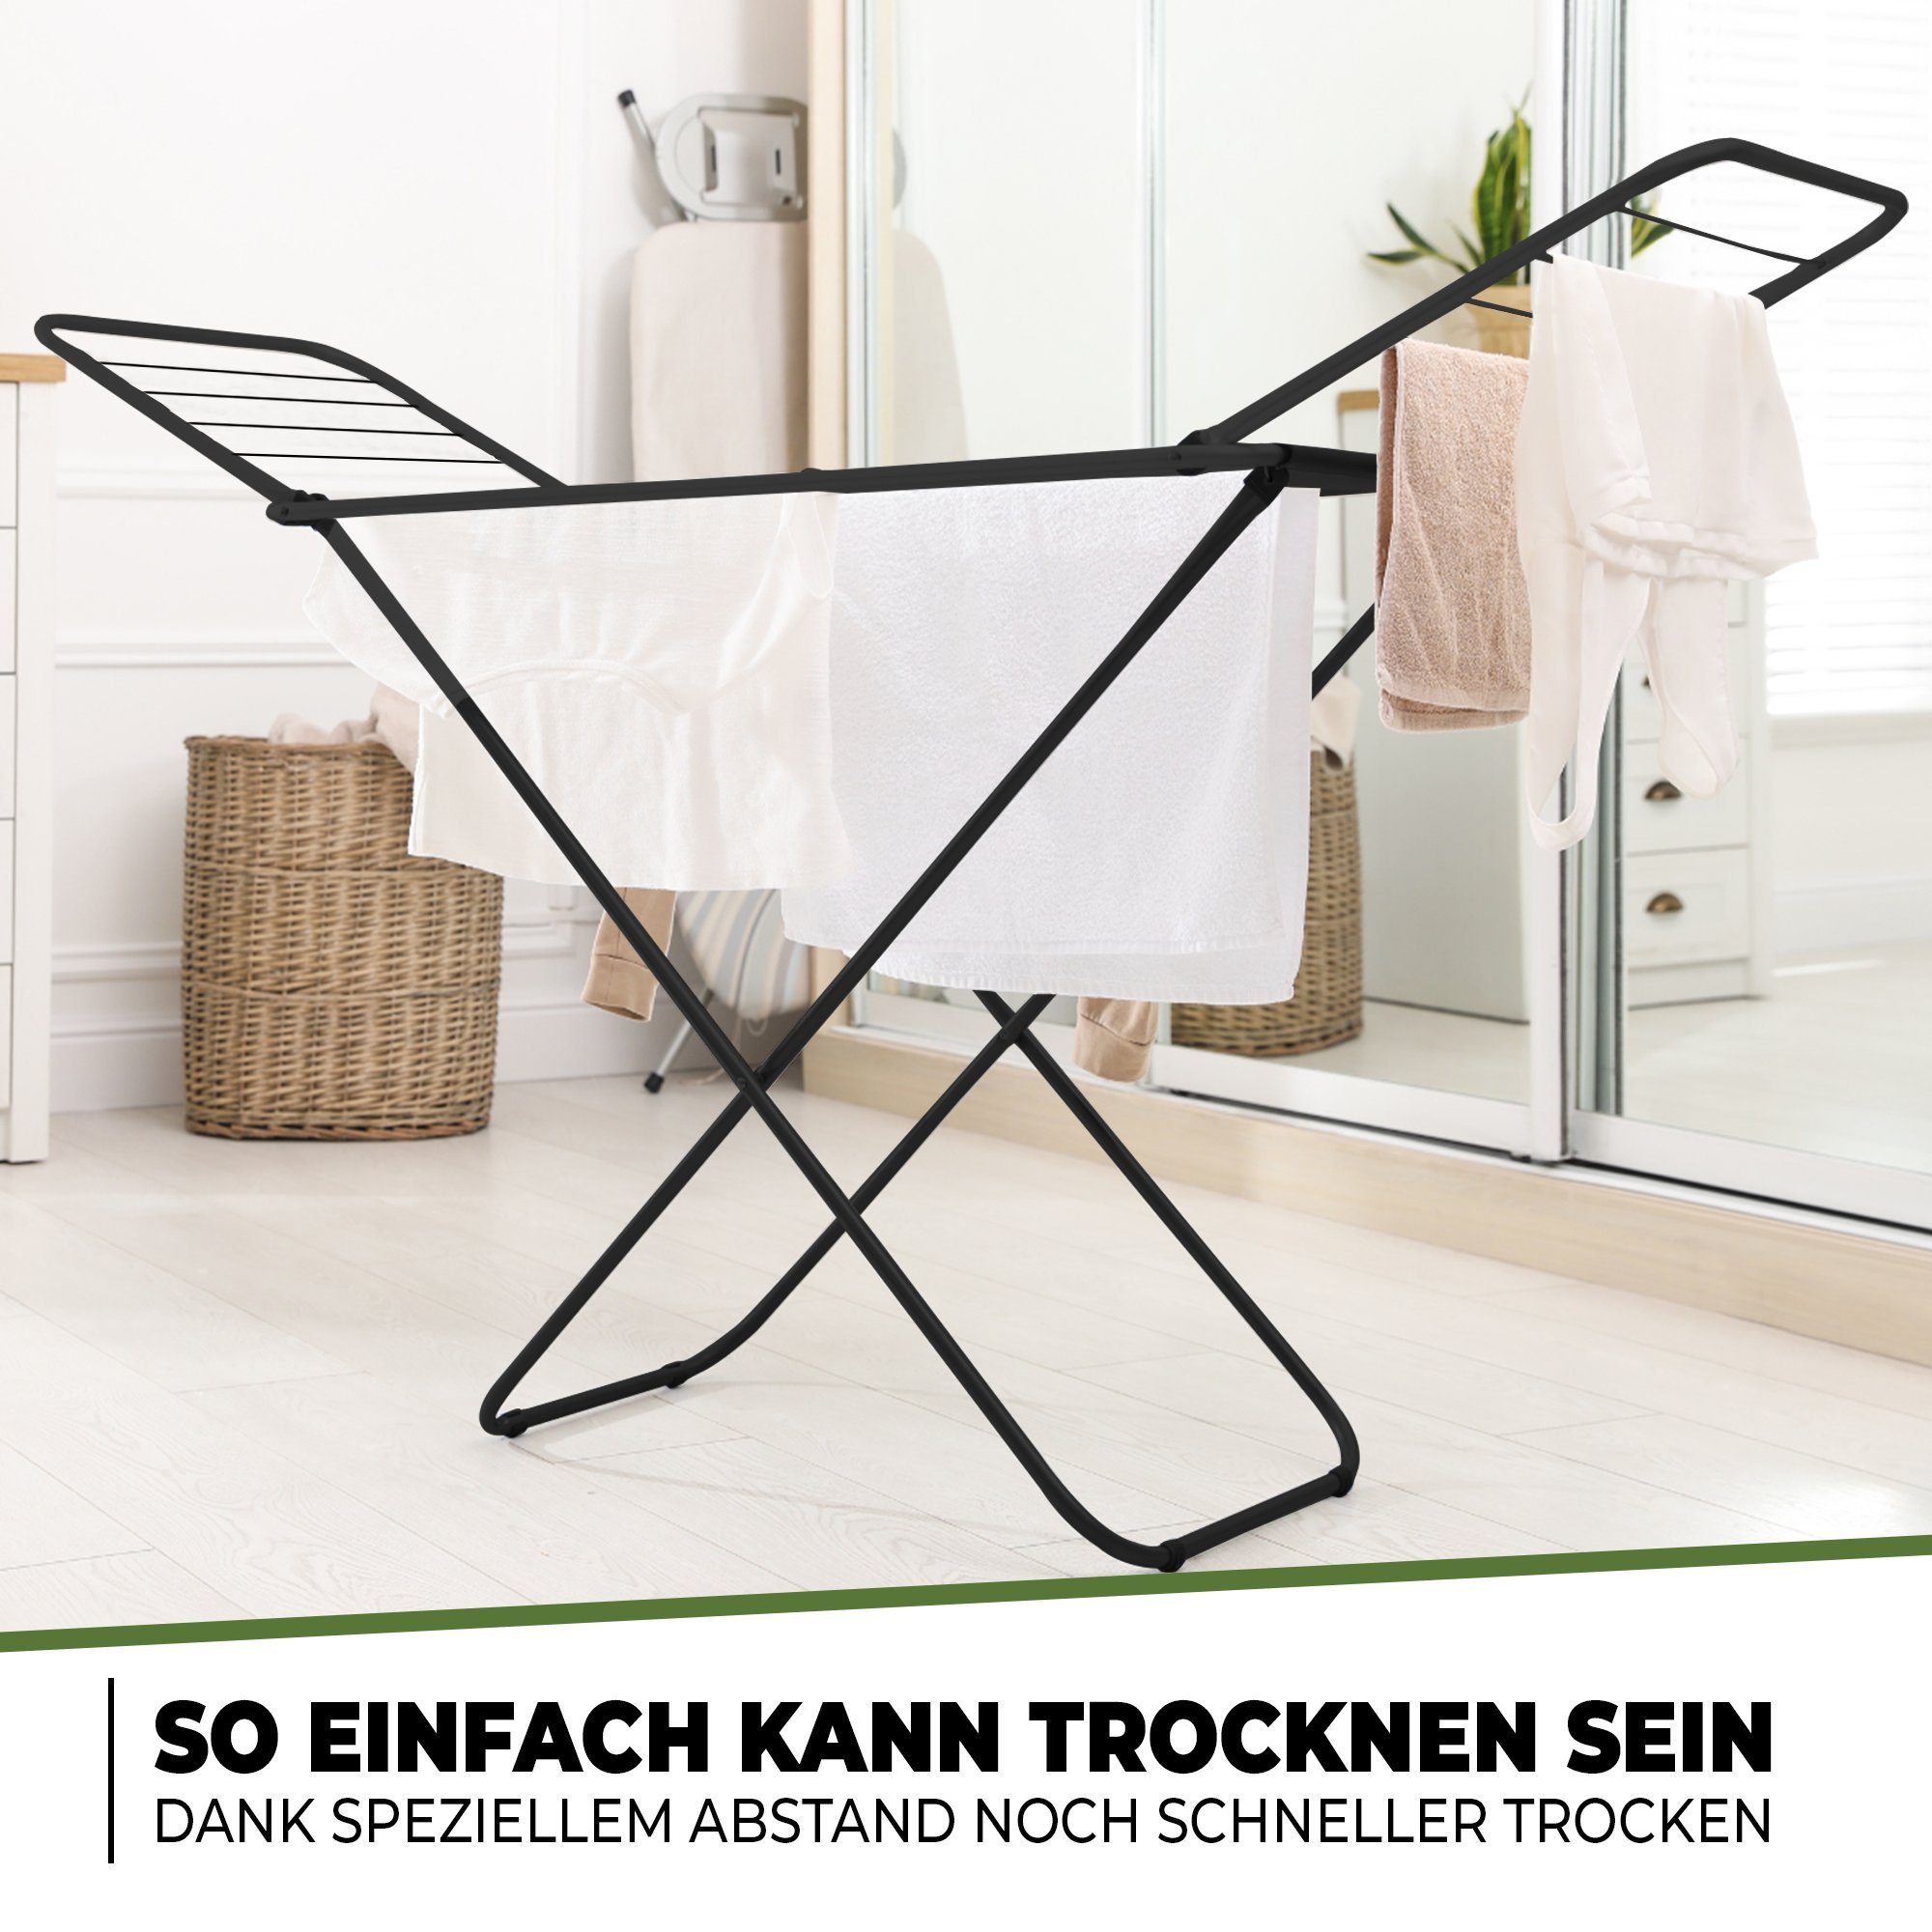 STAHLMANN COMMERCE GmbH Wäscheständer extra stabiler 18m klappbarer Wäscheständer Wäschetrockner, Flügelwäscheständer, ausziehbarer